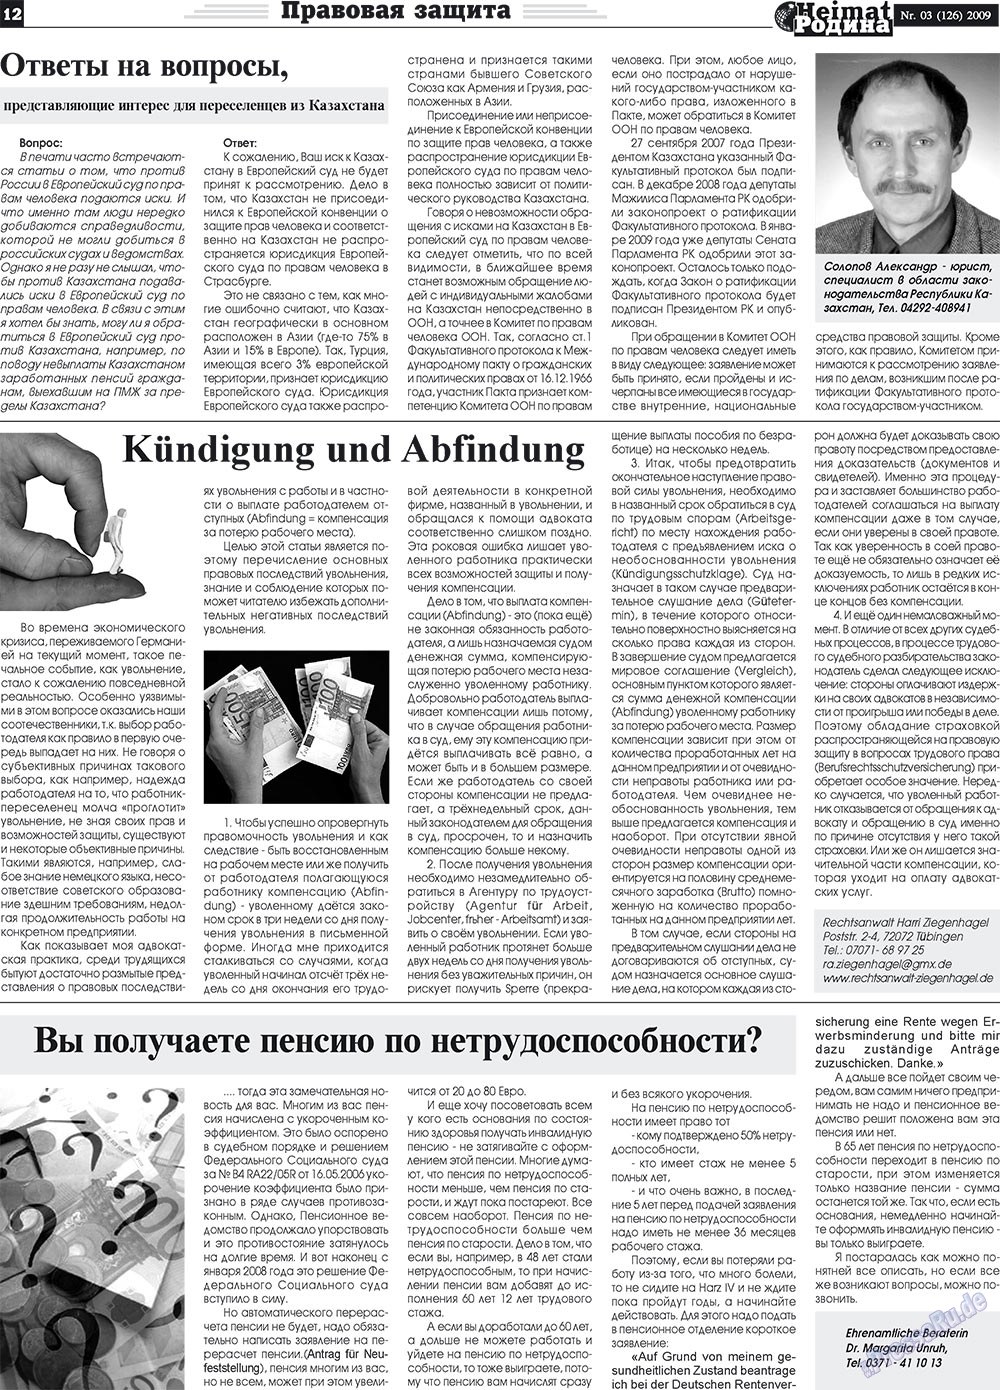 Heimat-Родина (газета). 2009 год, номер 3, стр. 12